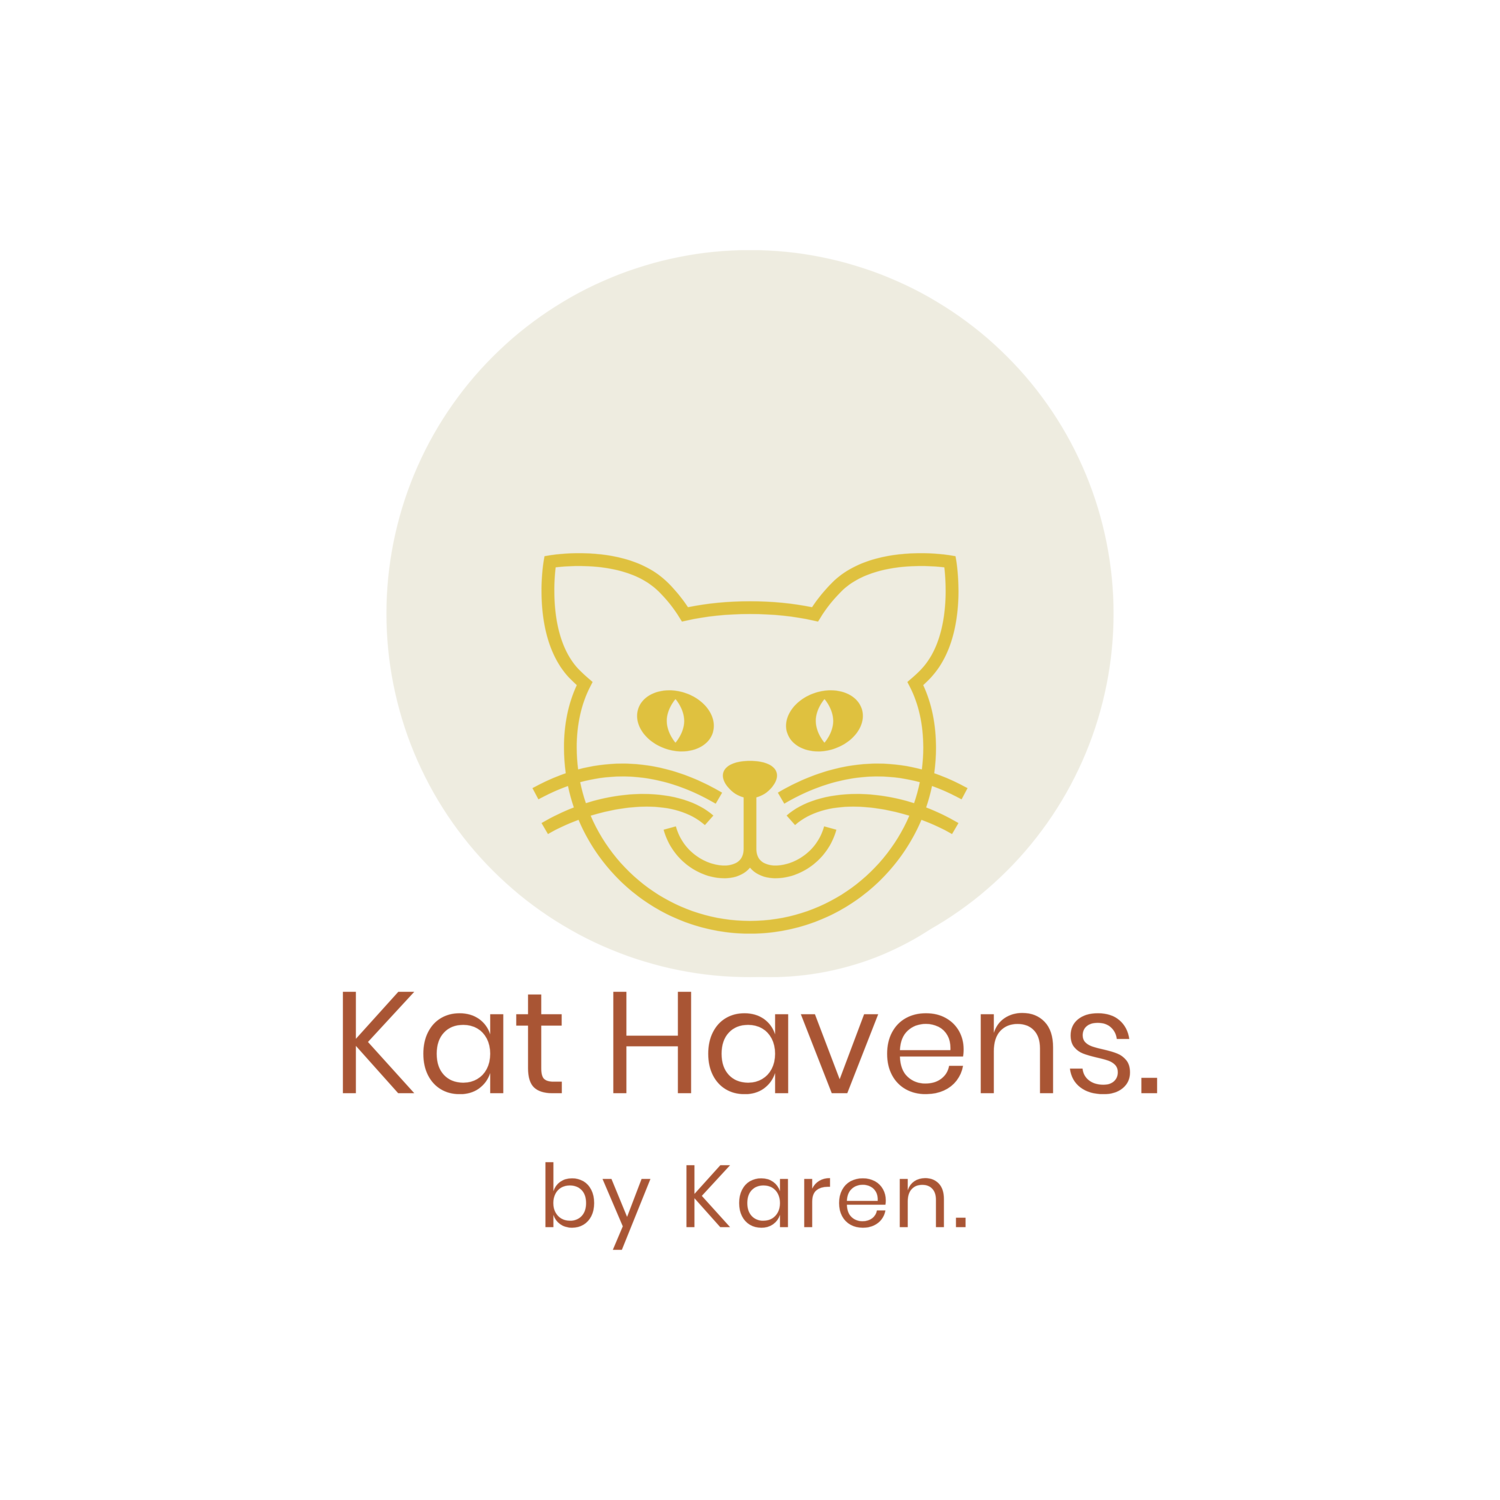 Kat Havens by Karen